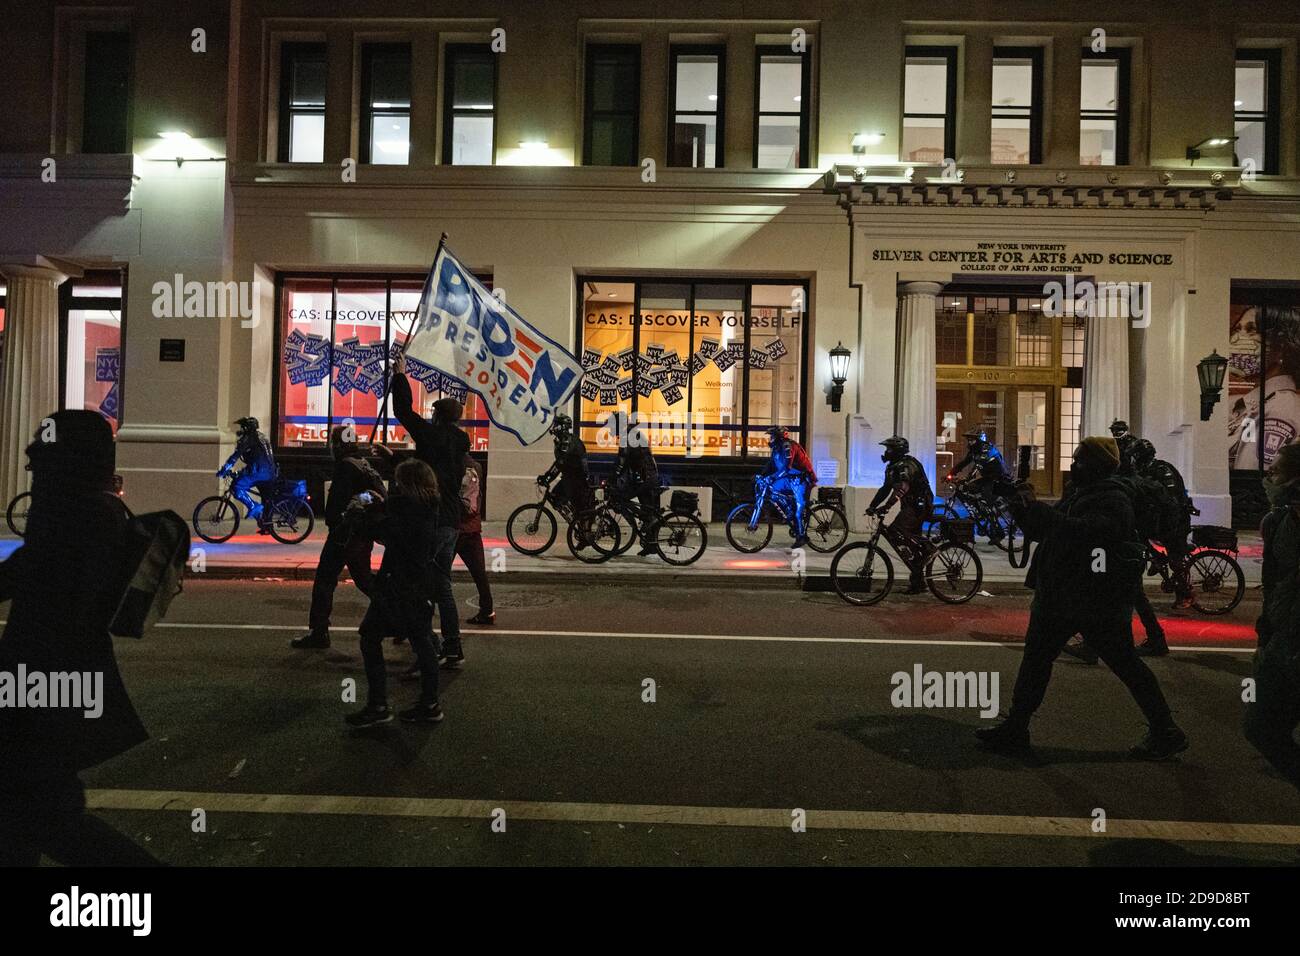 New York, New York, États-Unis. 4 novembre 2020. Alors que les États-Unis attendent les résultats des élections, la police montée sur vélo dans une armure corporelle se balade aux côtés des manifestants pro-Biden qui défilent dans le quartier de Greenwich Village à New York Banque D'Images